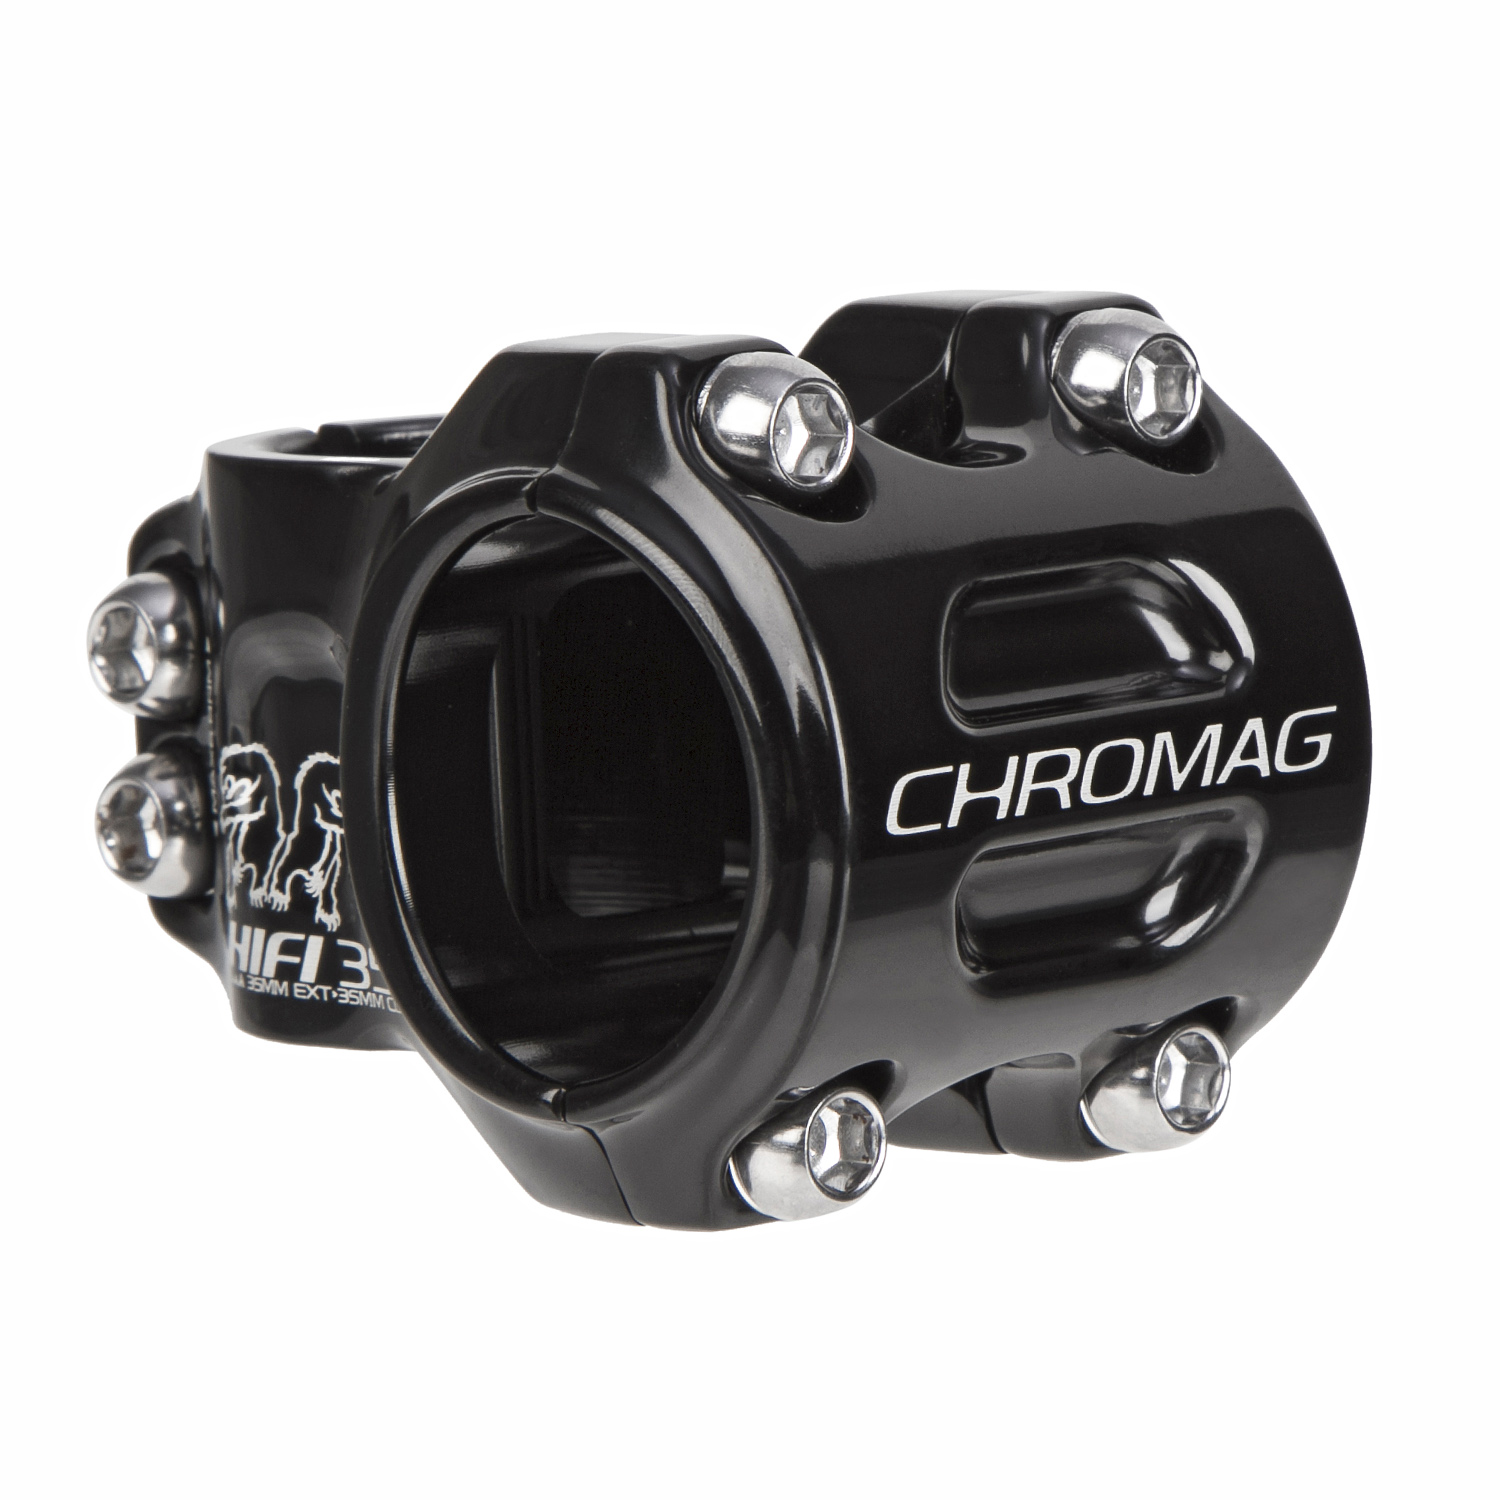 Chromag MTB Stem HIFI 35.0 mm, 35 mm Reach, Black